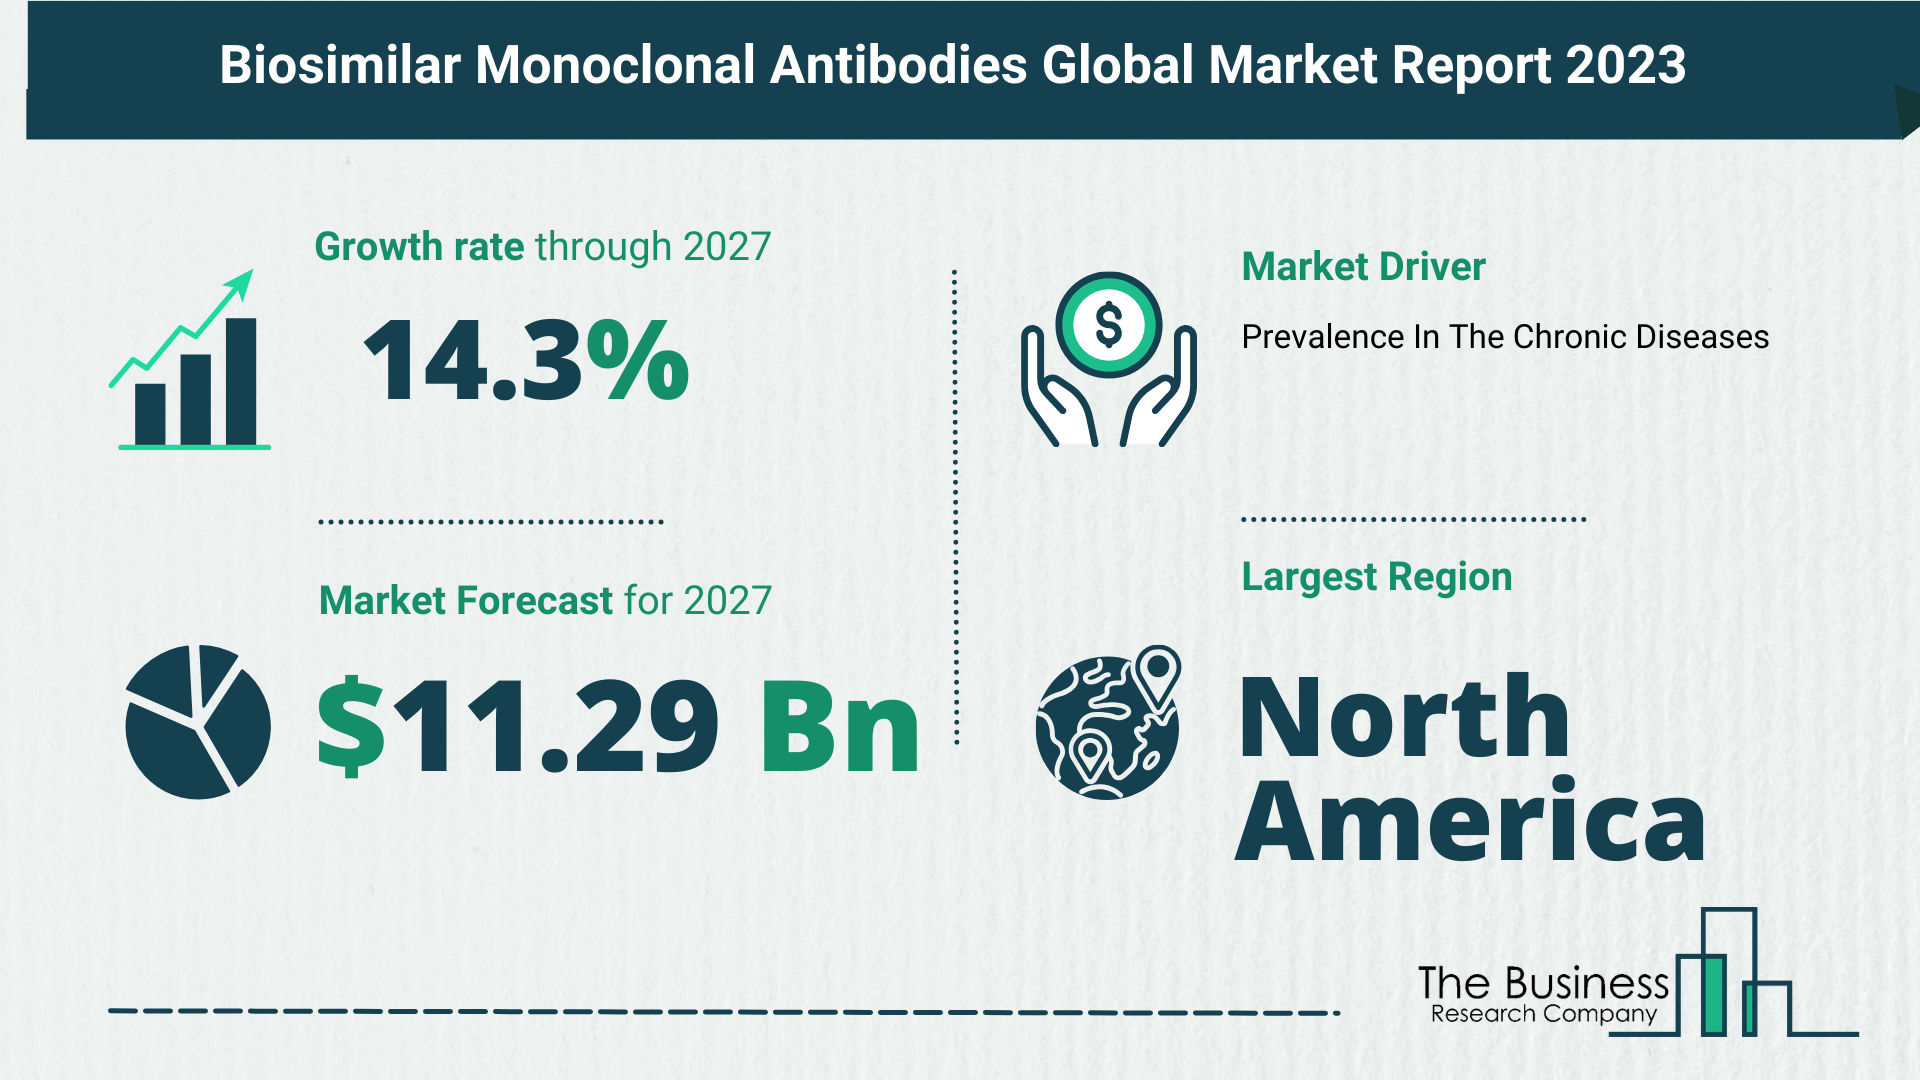 Biosimilar Monoclonal Antibodies Market Forecast 2023: Forecast Market Size, Drivers And Key Segments